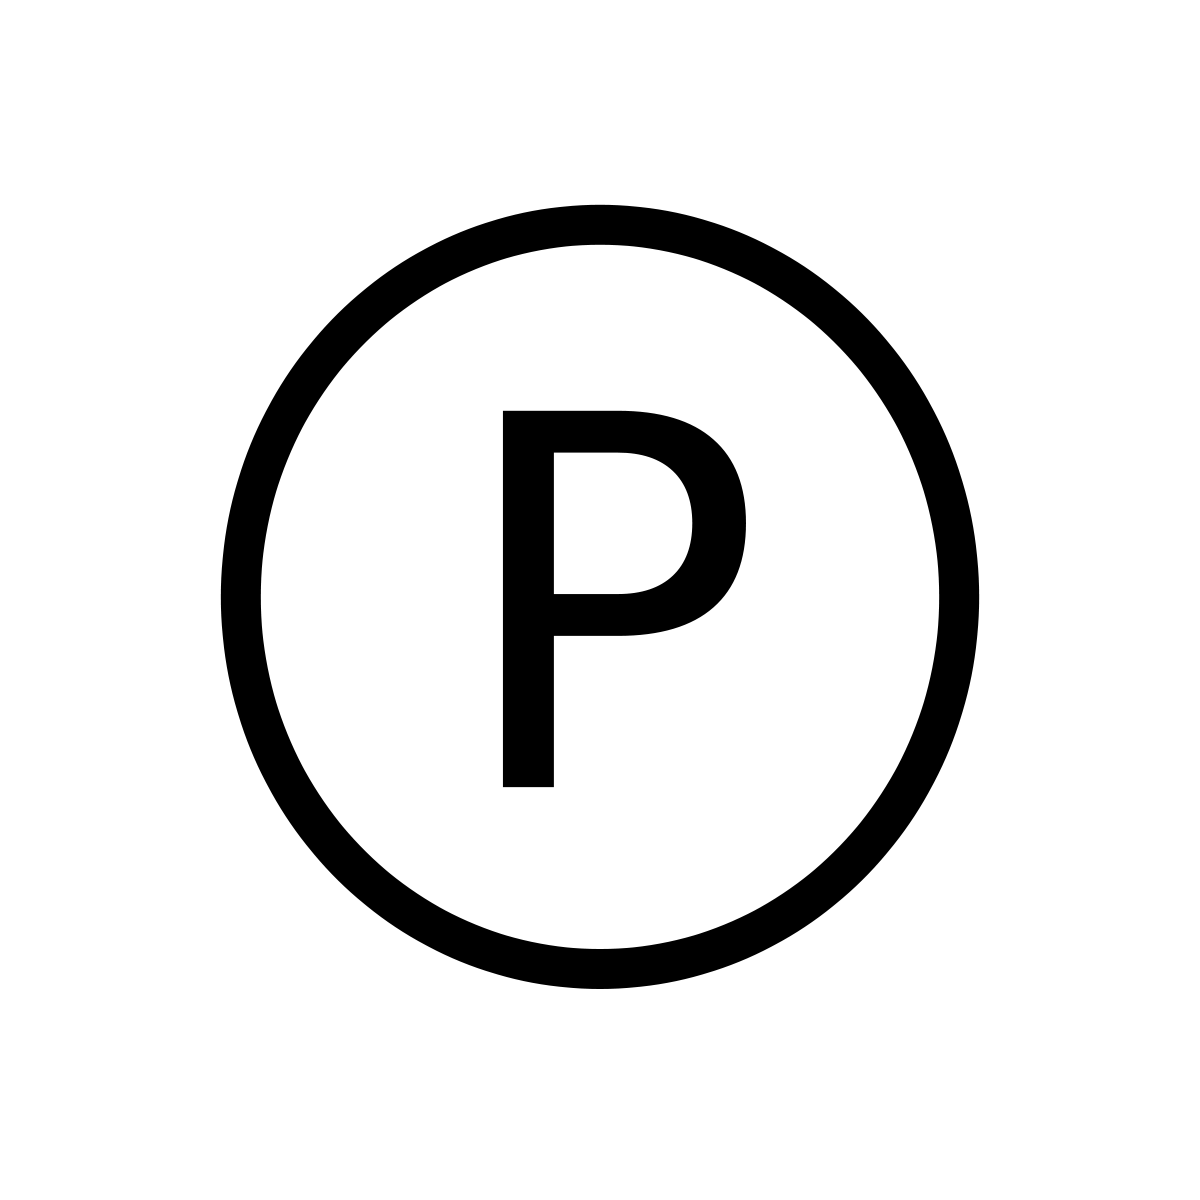 Circle P Logo